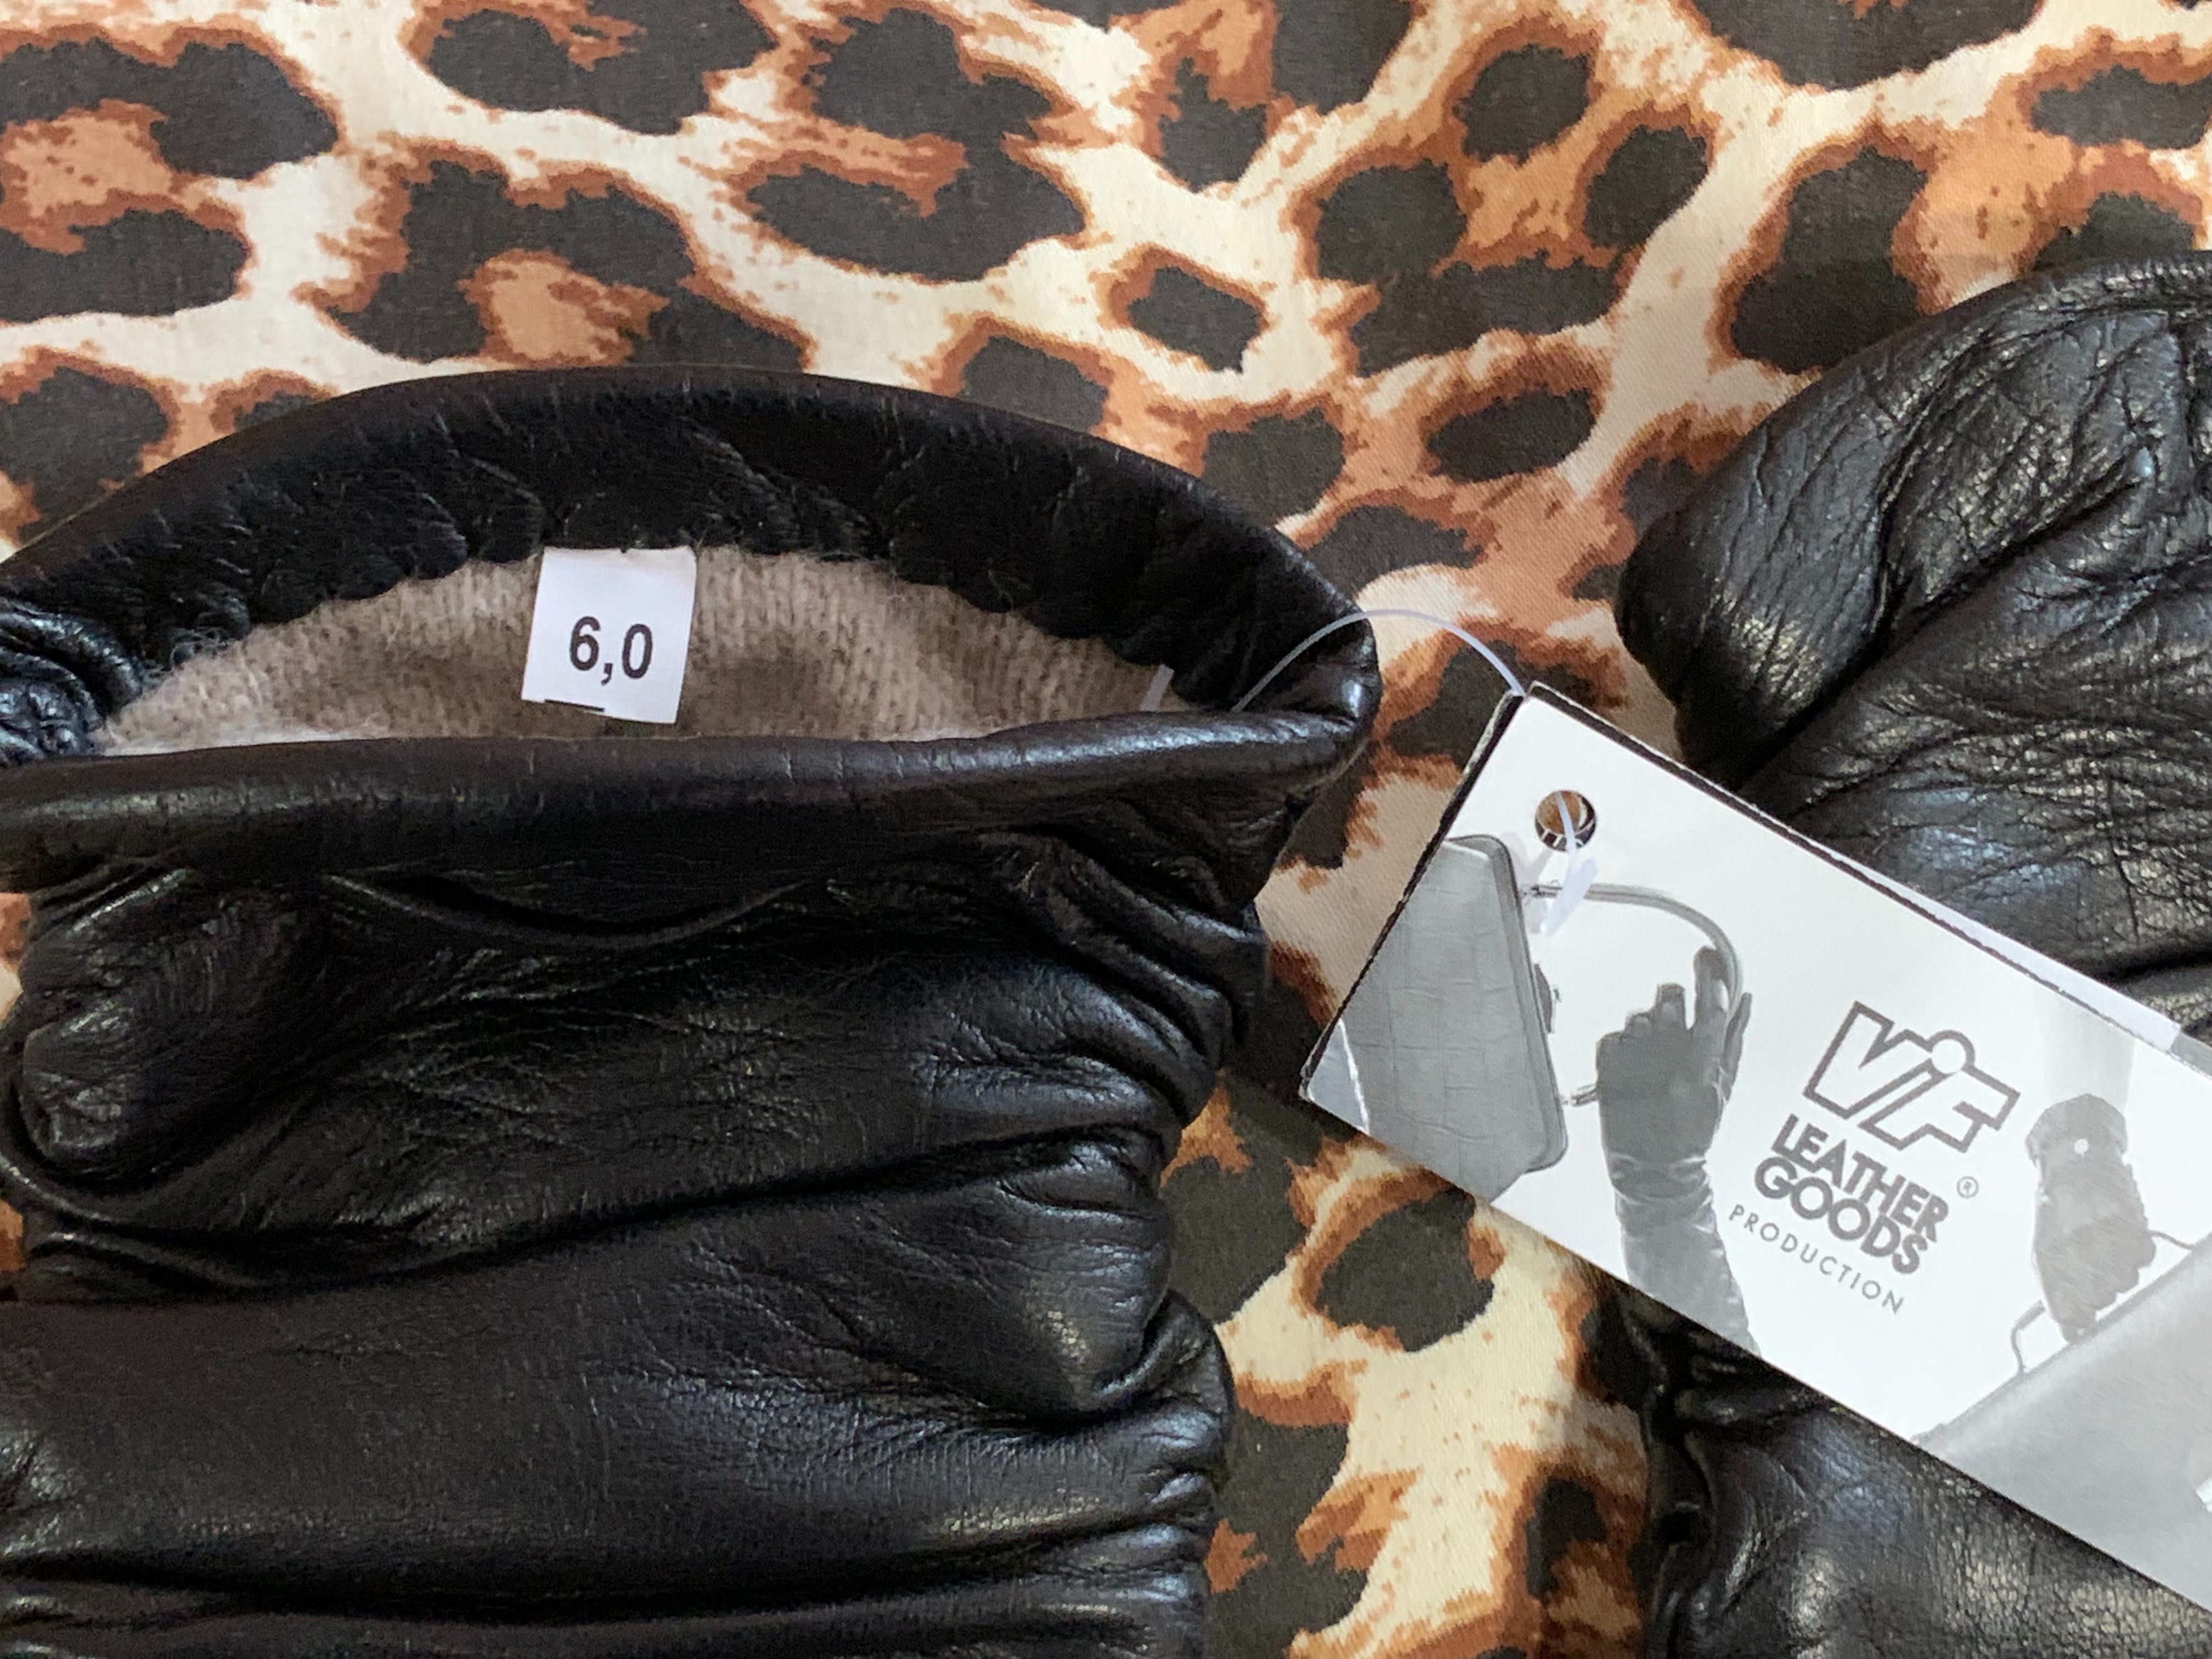 Новые VIF Leather Goods р. 6,0 100% кожаные/шерсть женские перчатки